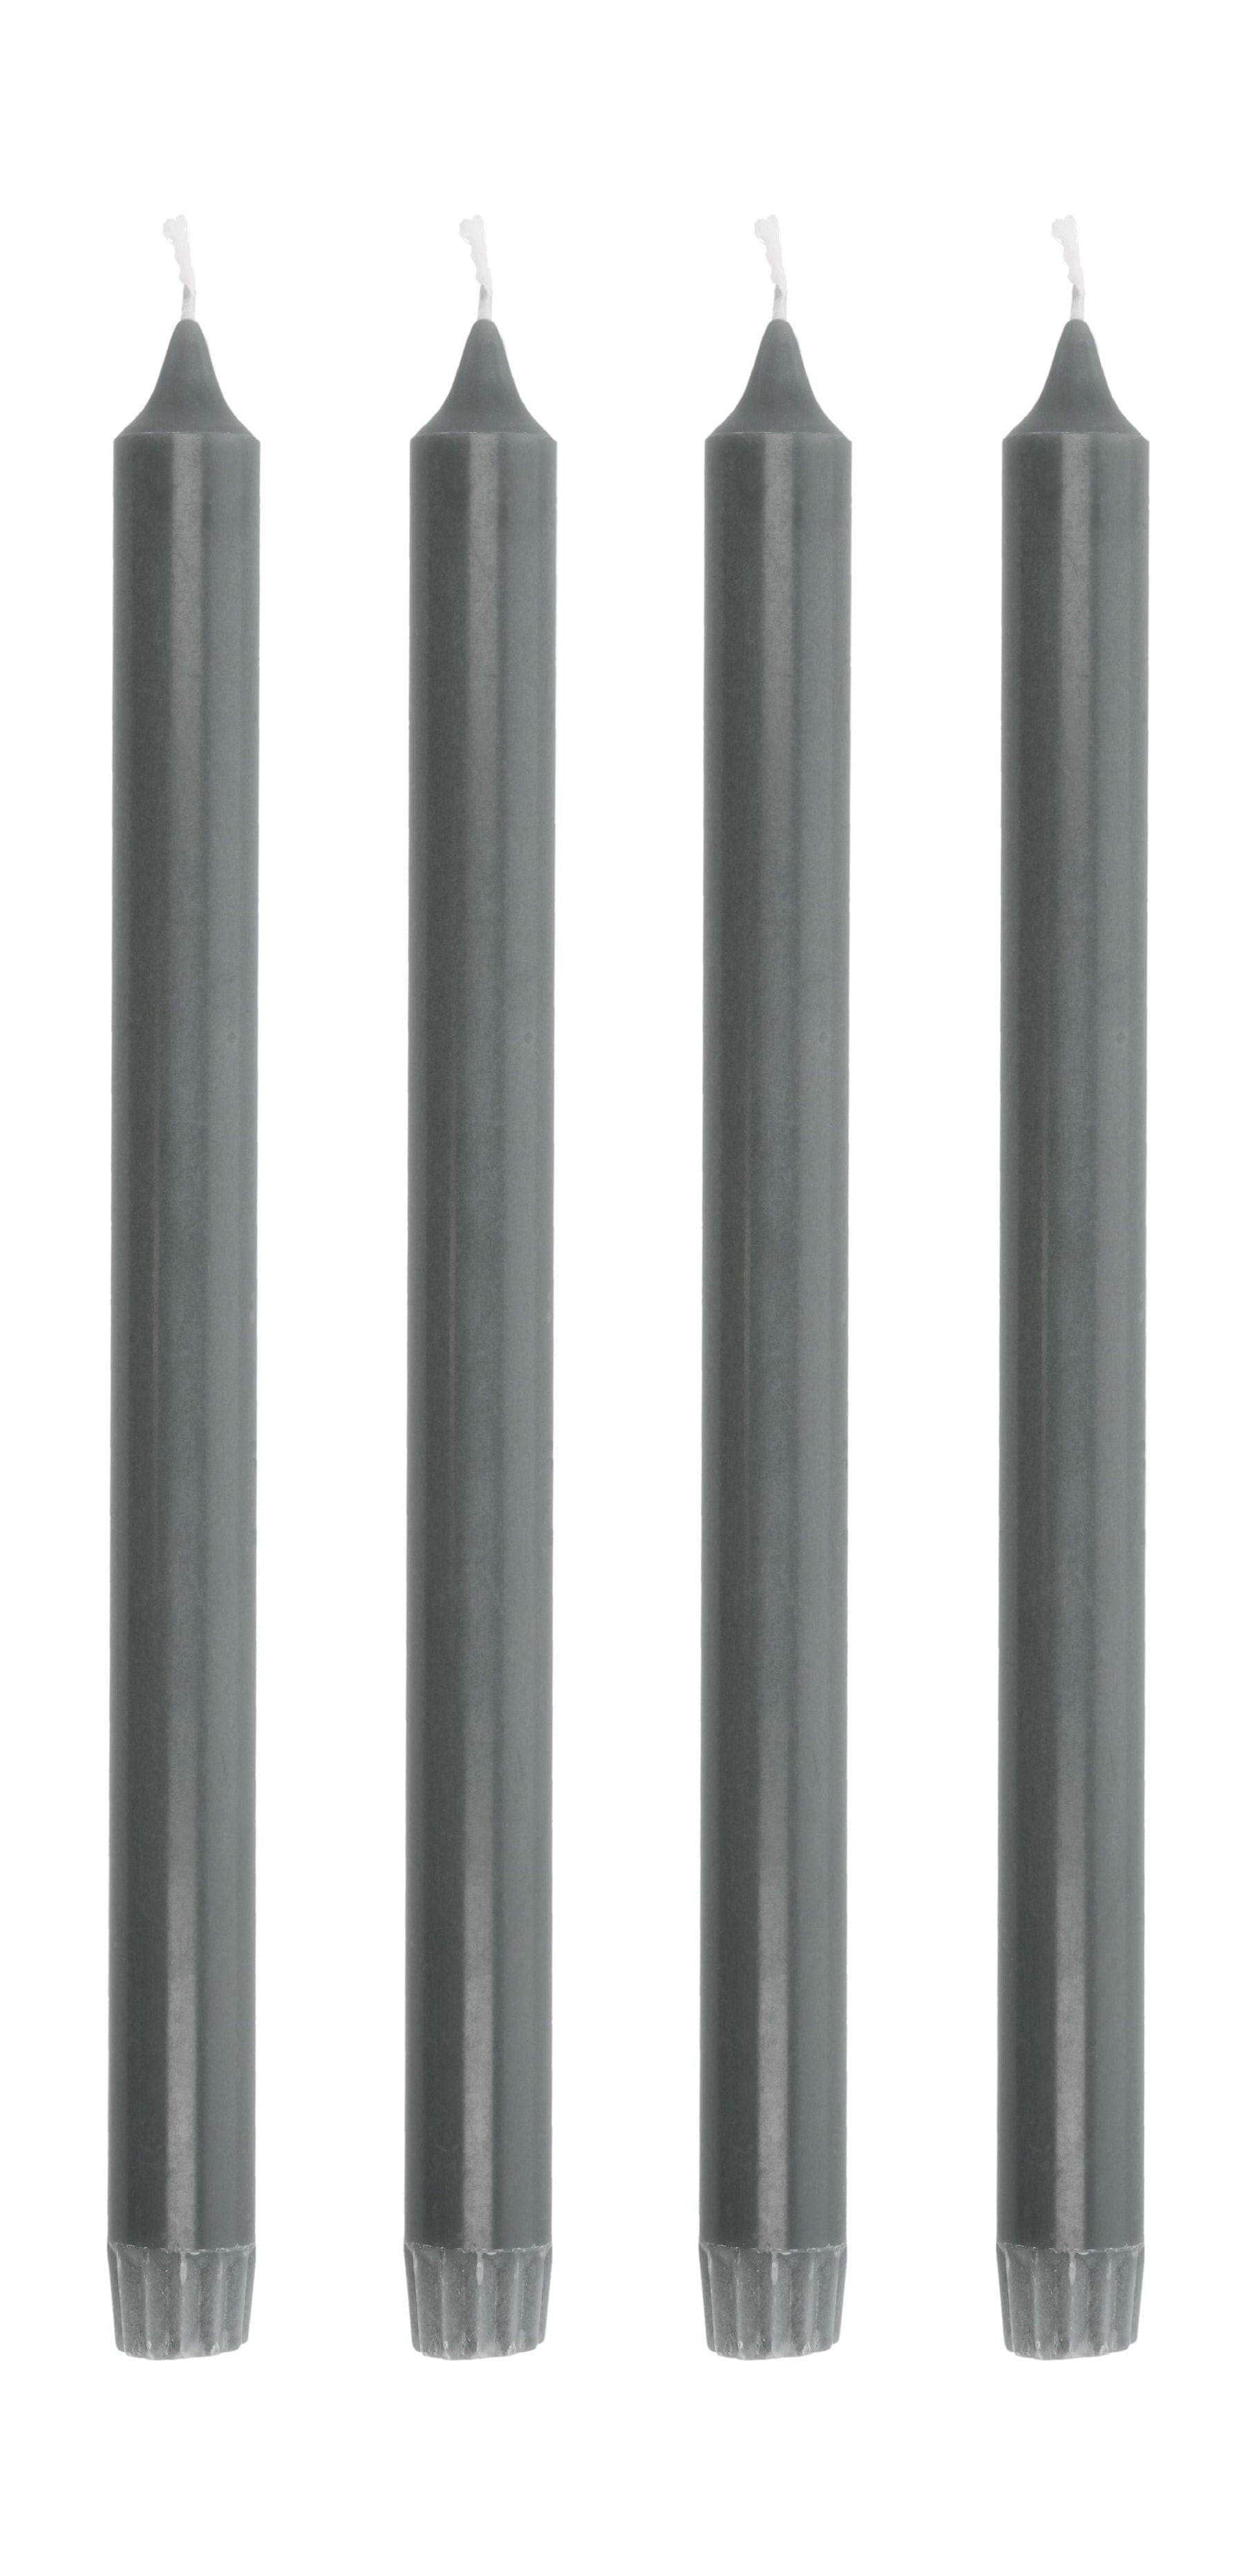 Collezione Villa AIA Stick Candele Set di 4 Øx H 2.2x30, grigio scuro